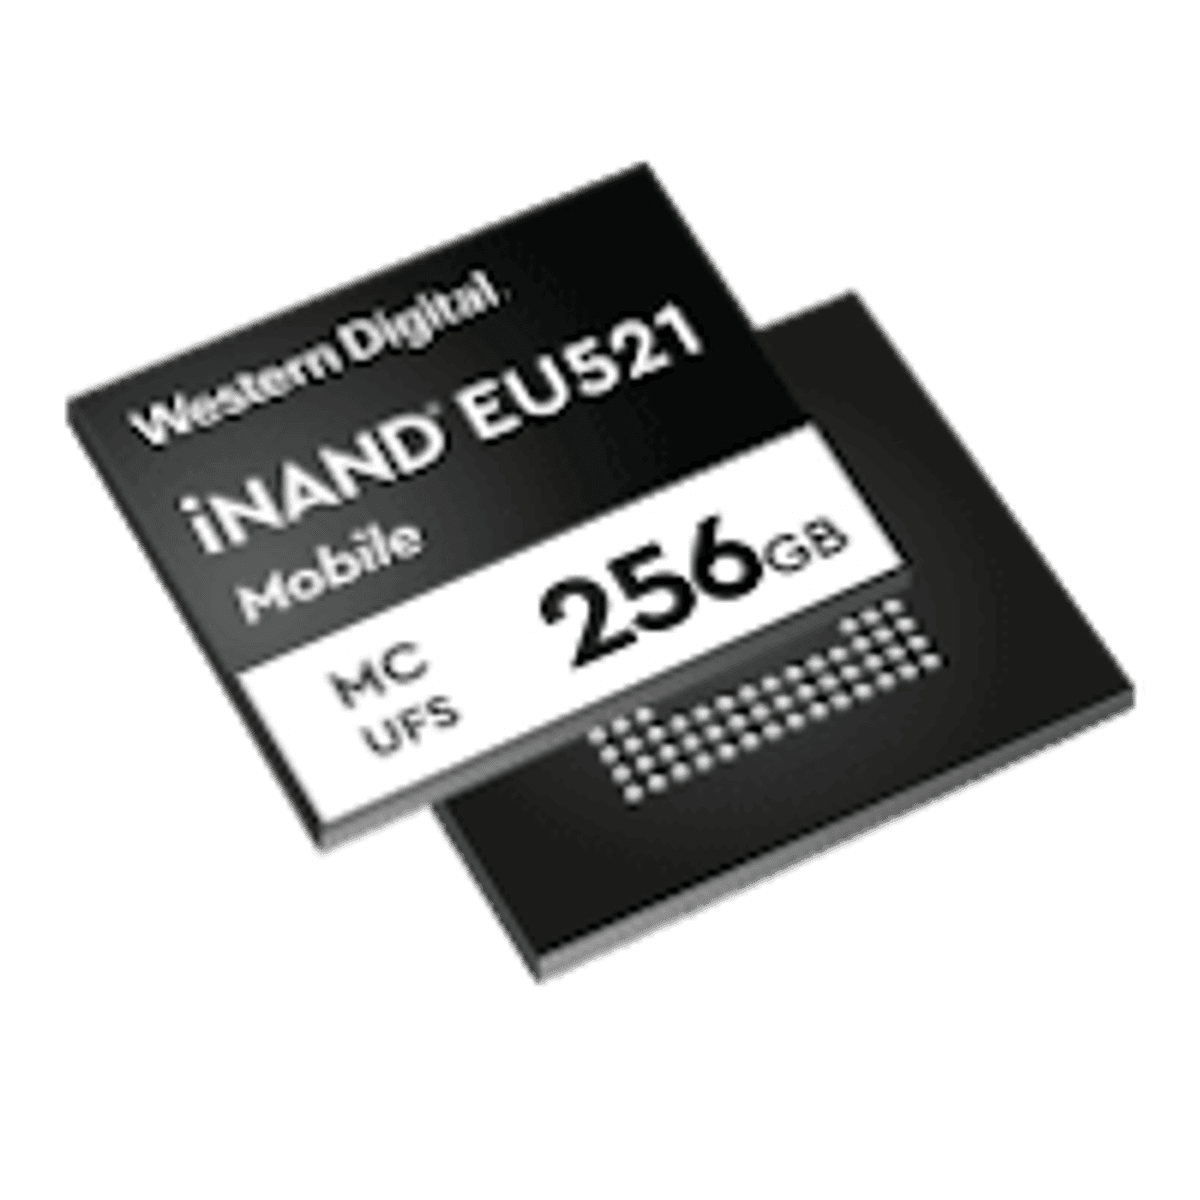 Nieuwe iNAND van Western Digital biedt sequentiële schrijfsnelheden tot 800 MB/s image